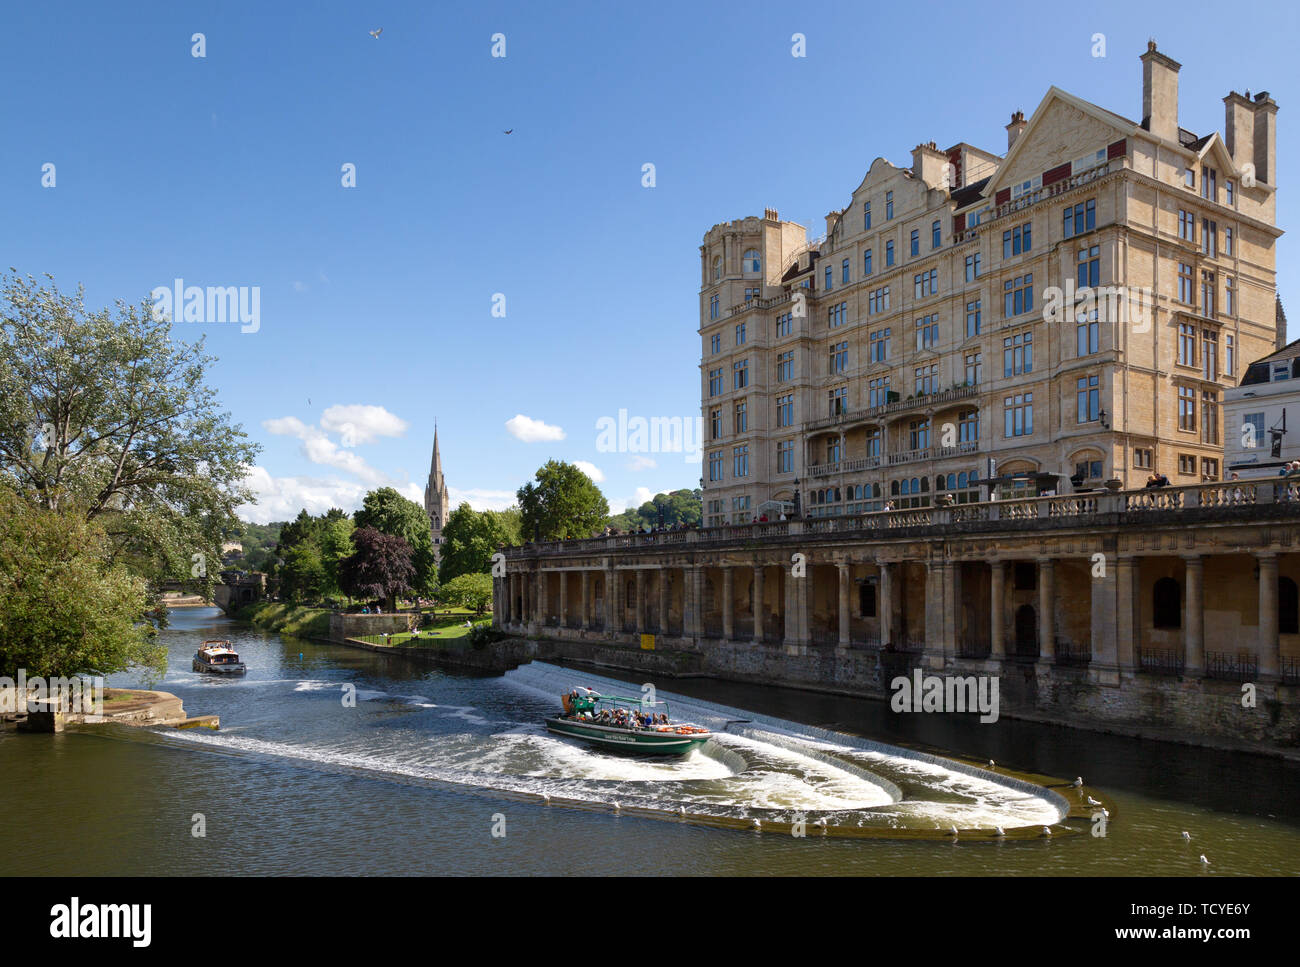 Bath Inghilterra - Pulteney Weir e edifici sul fiume Avon in estate il sole, sito patrimonio mondiale dell'UNESCO, bagno Somerset REGNO UNITO Foto Stock